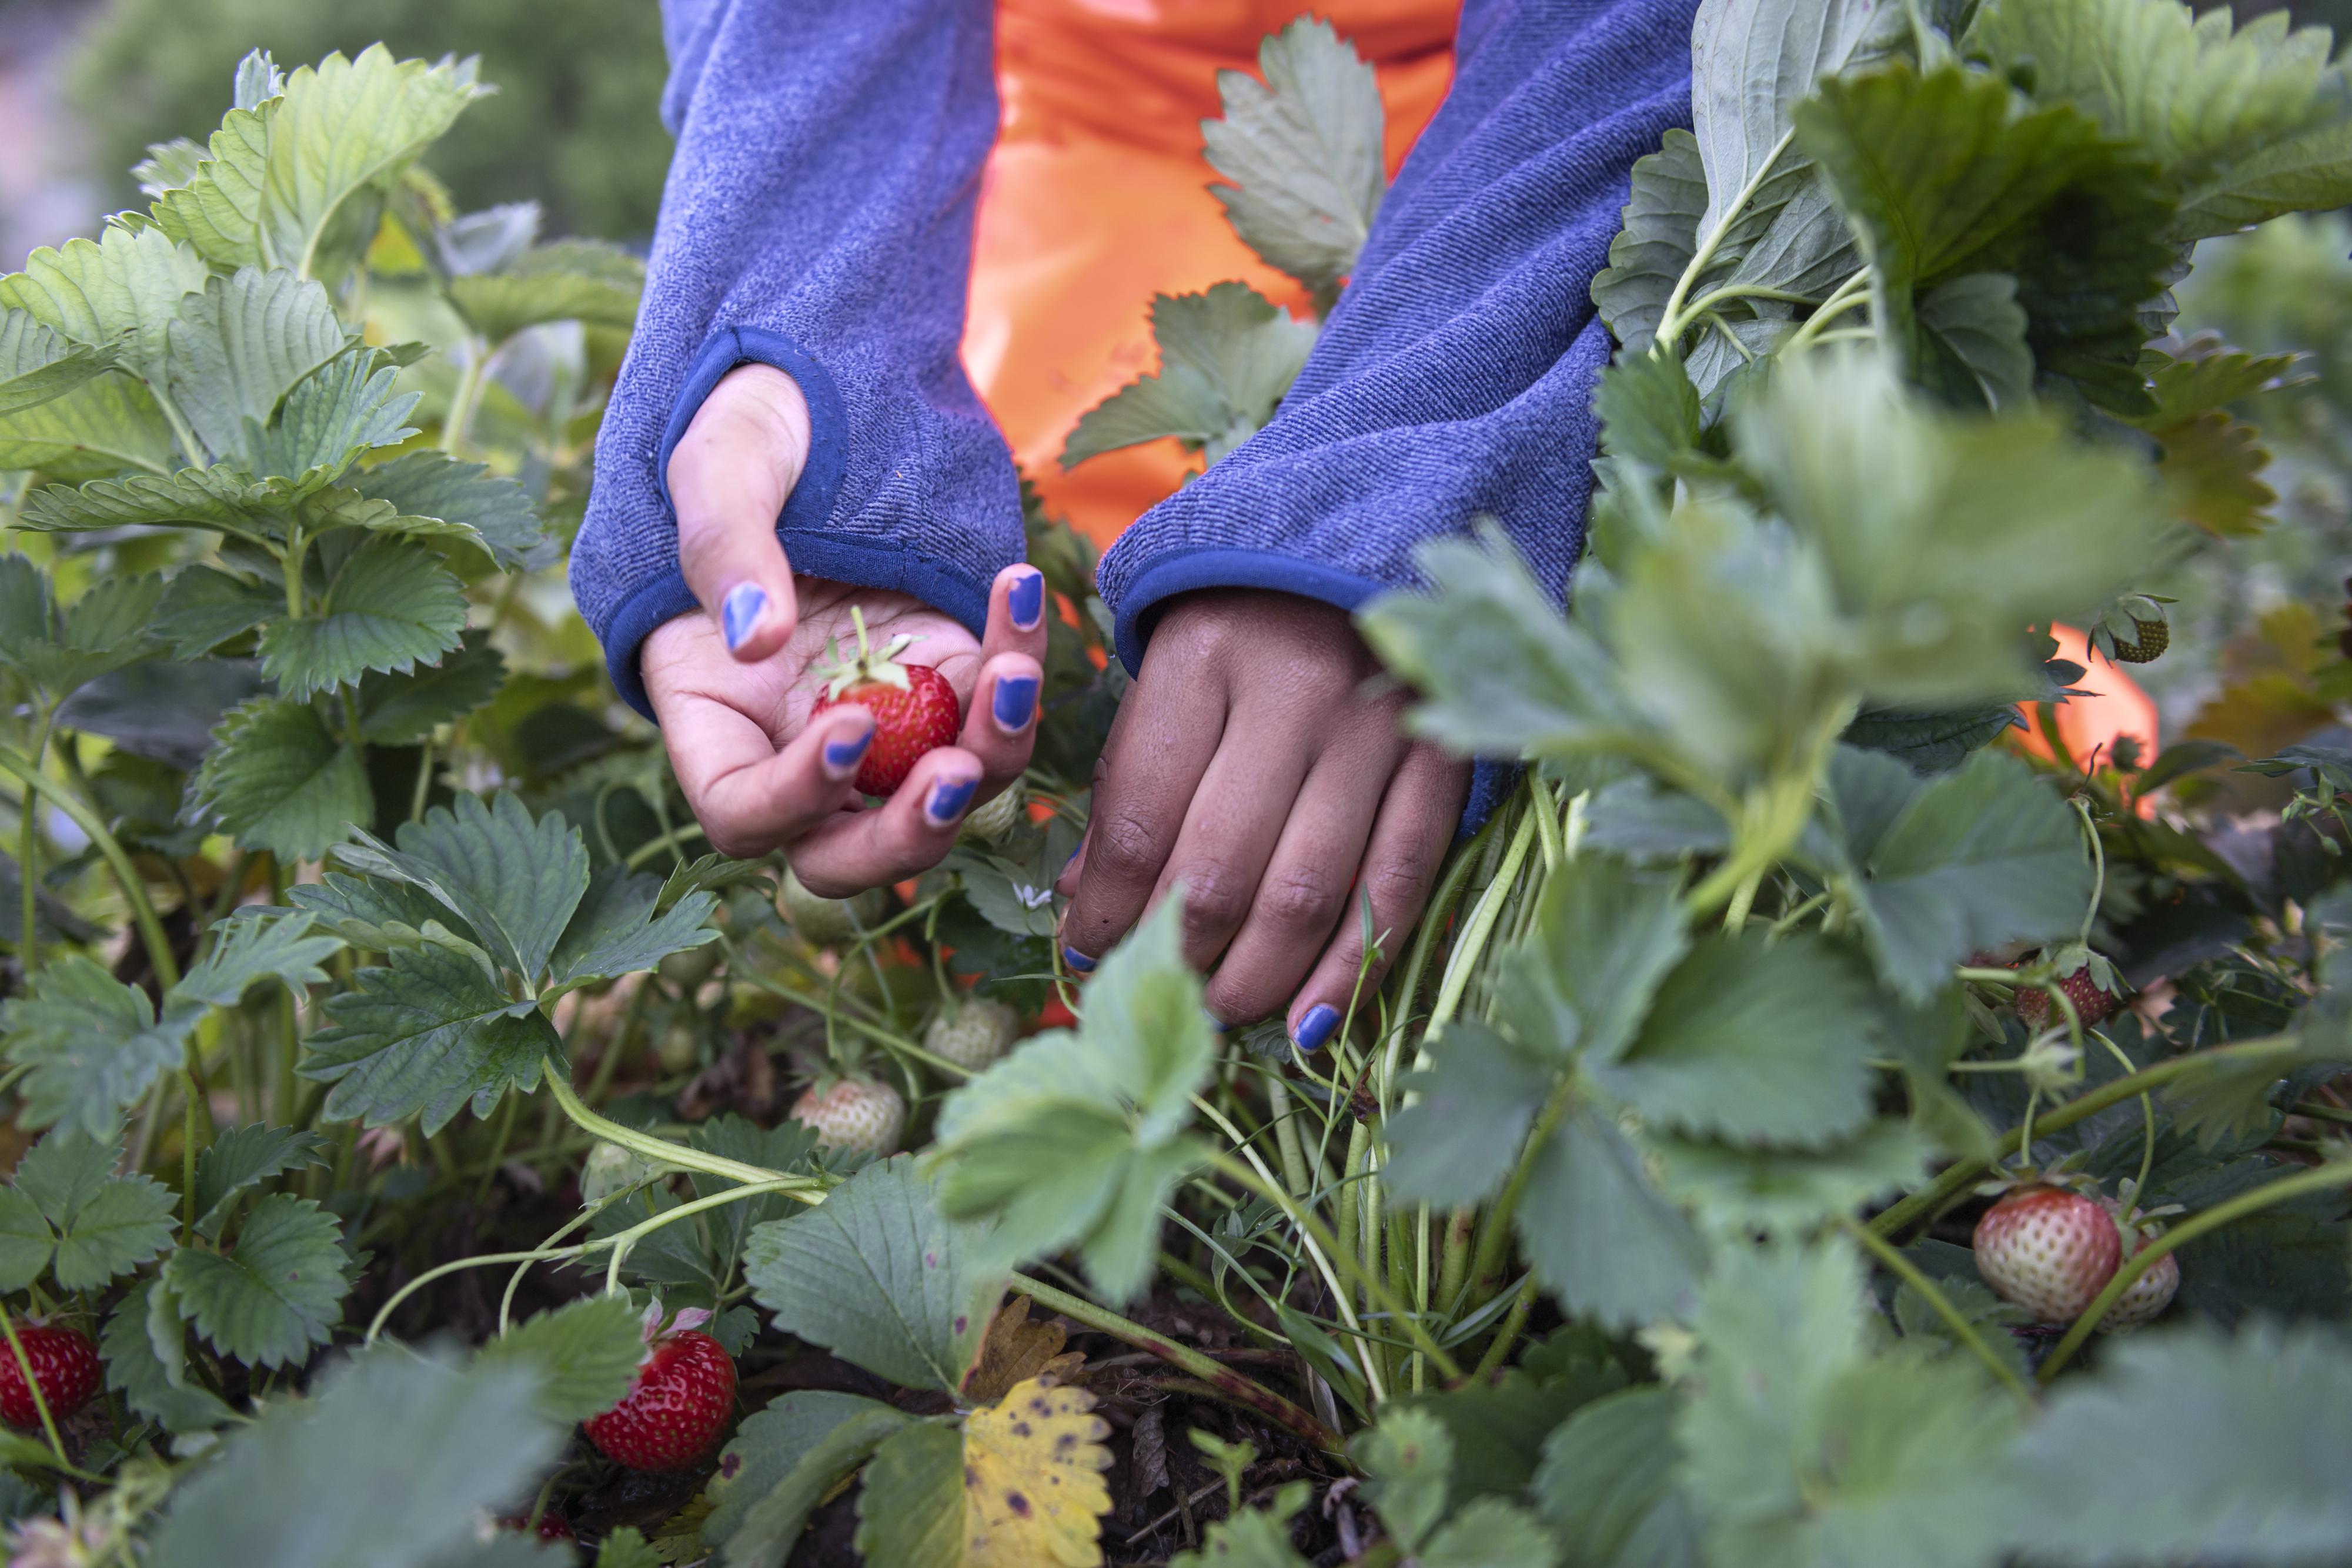 RÅTNER: Bøndene har produsert færre jordbær på grunn av manglende arbeidskraft. Nå risikerer de også at bærene råtner før de blir plukket. 